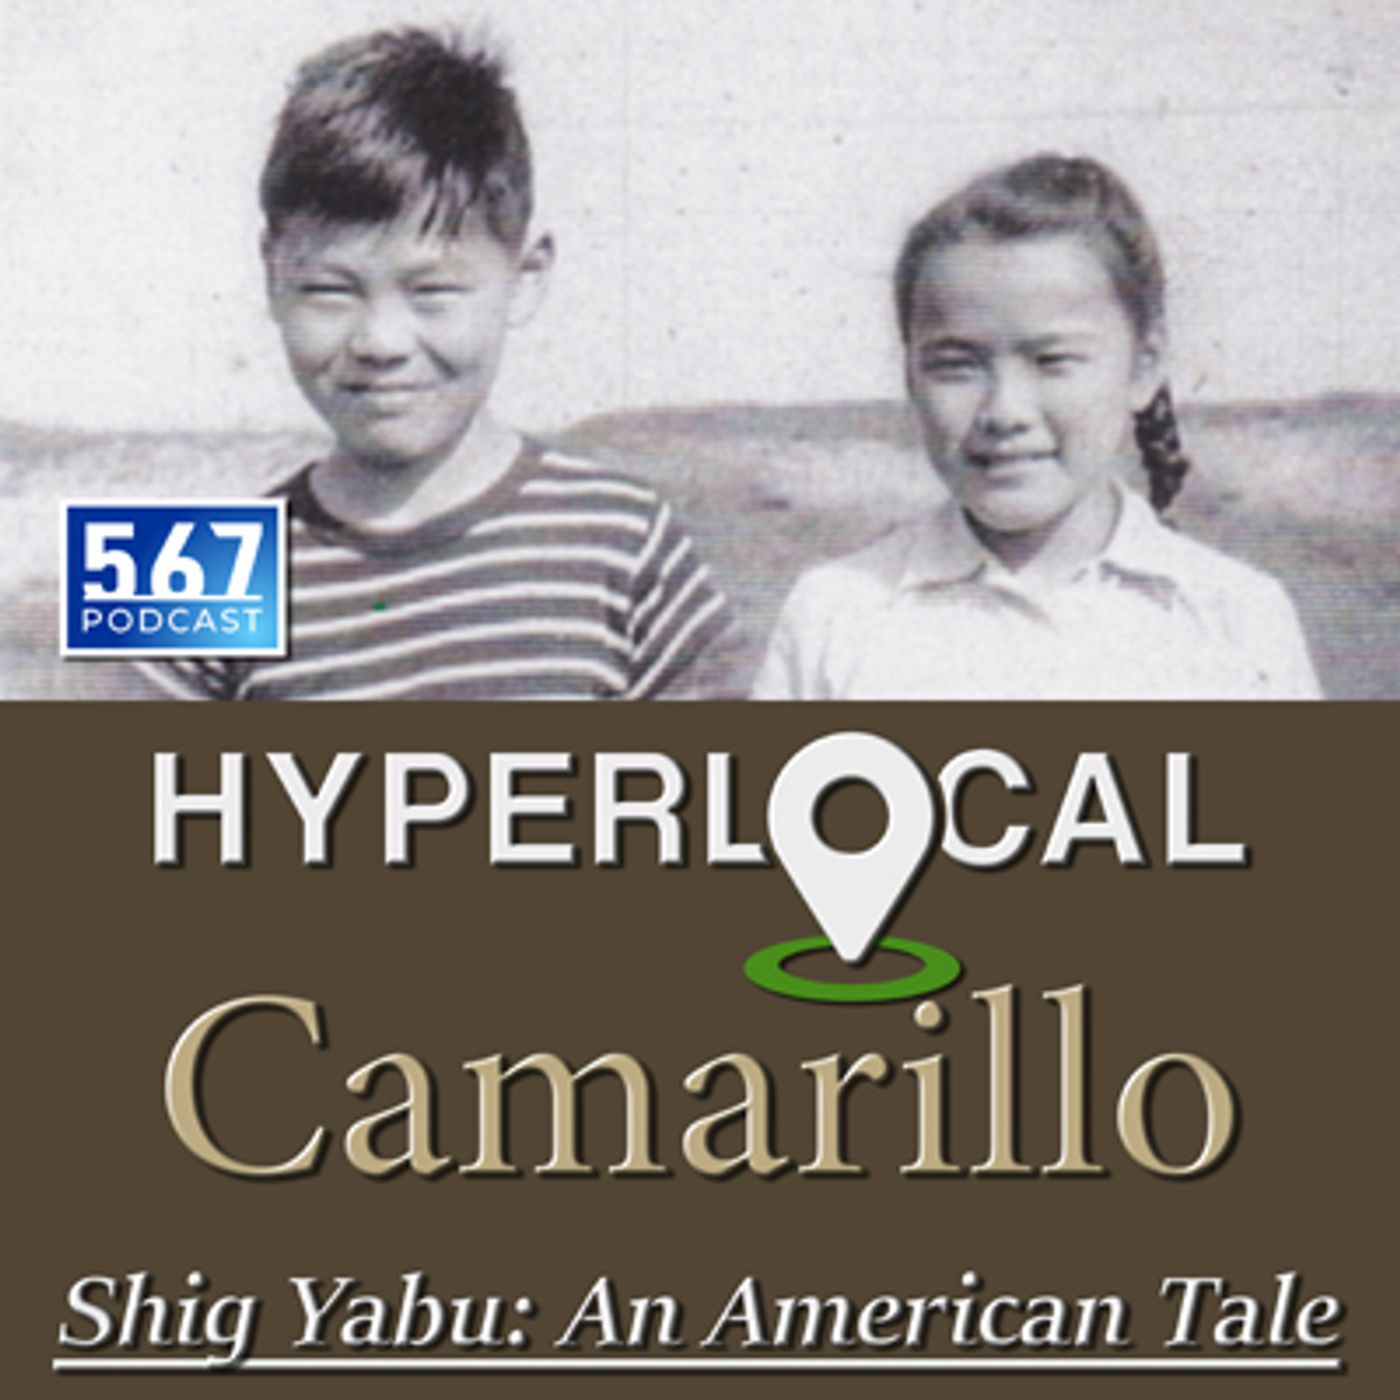 Shig Yabu: An American Tale